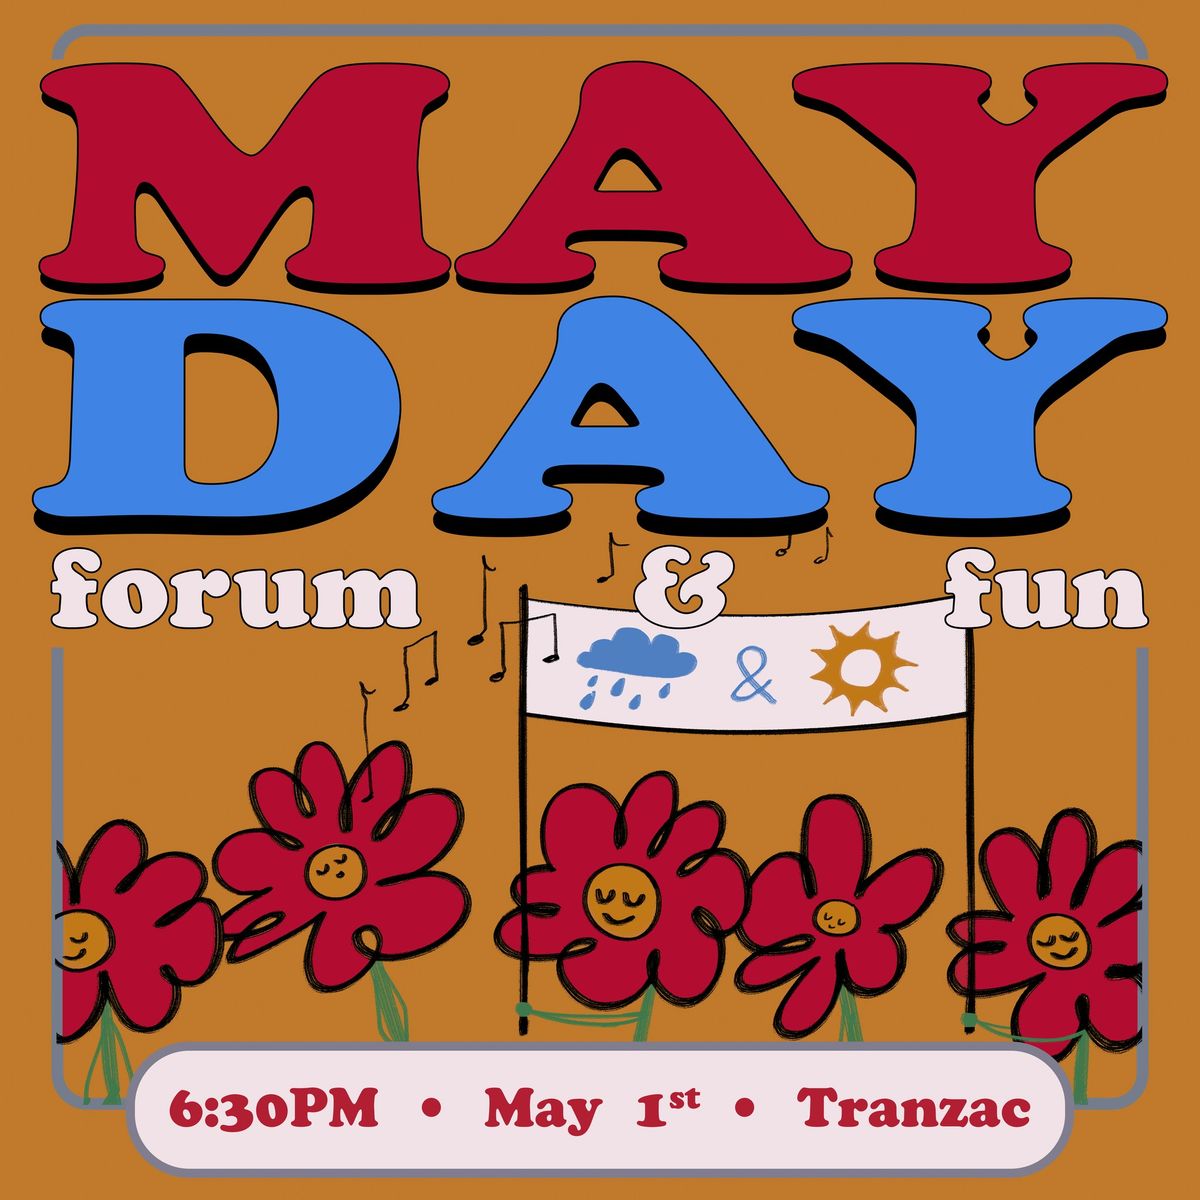 May Day forum & fun